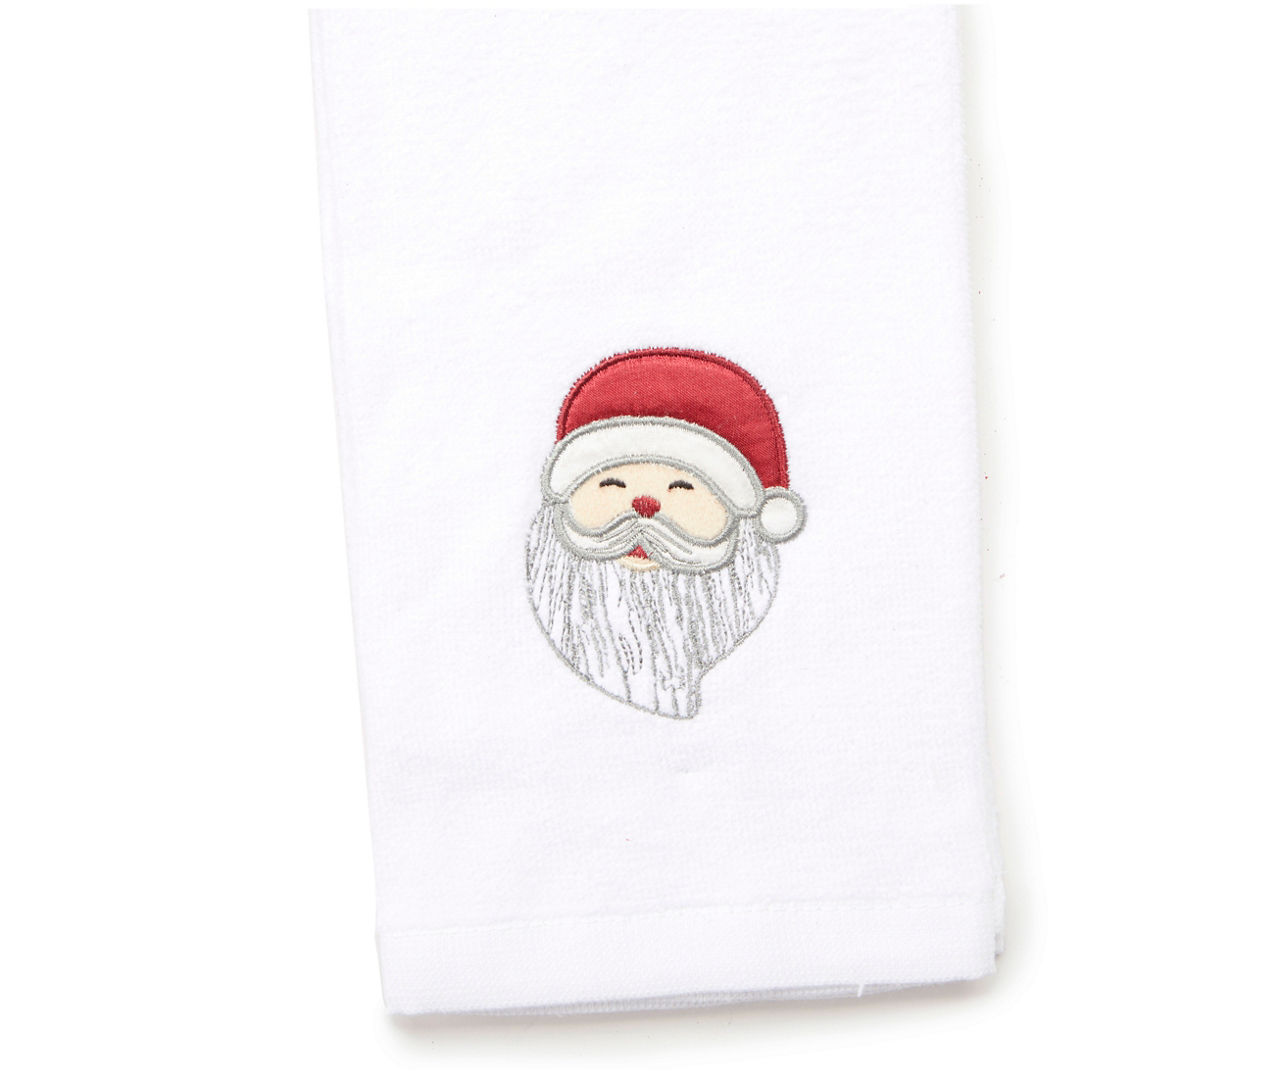 Winter Wonder Lane Santa's Workshop Cup of Cheer Green Embroidered  2-Piece Kitchen Towel Set